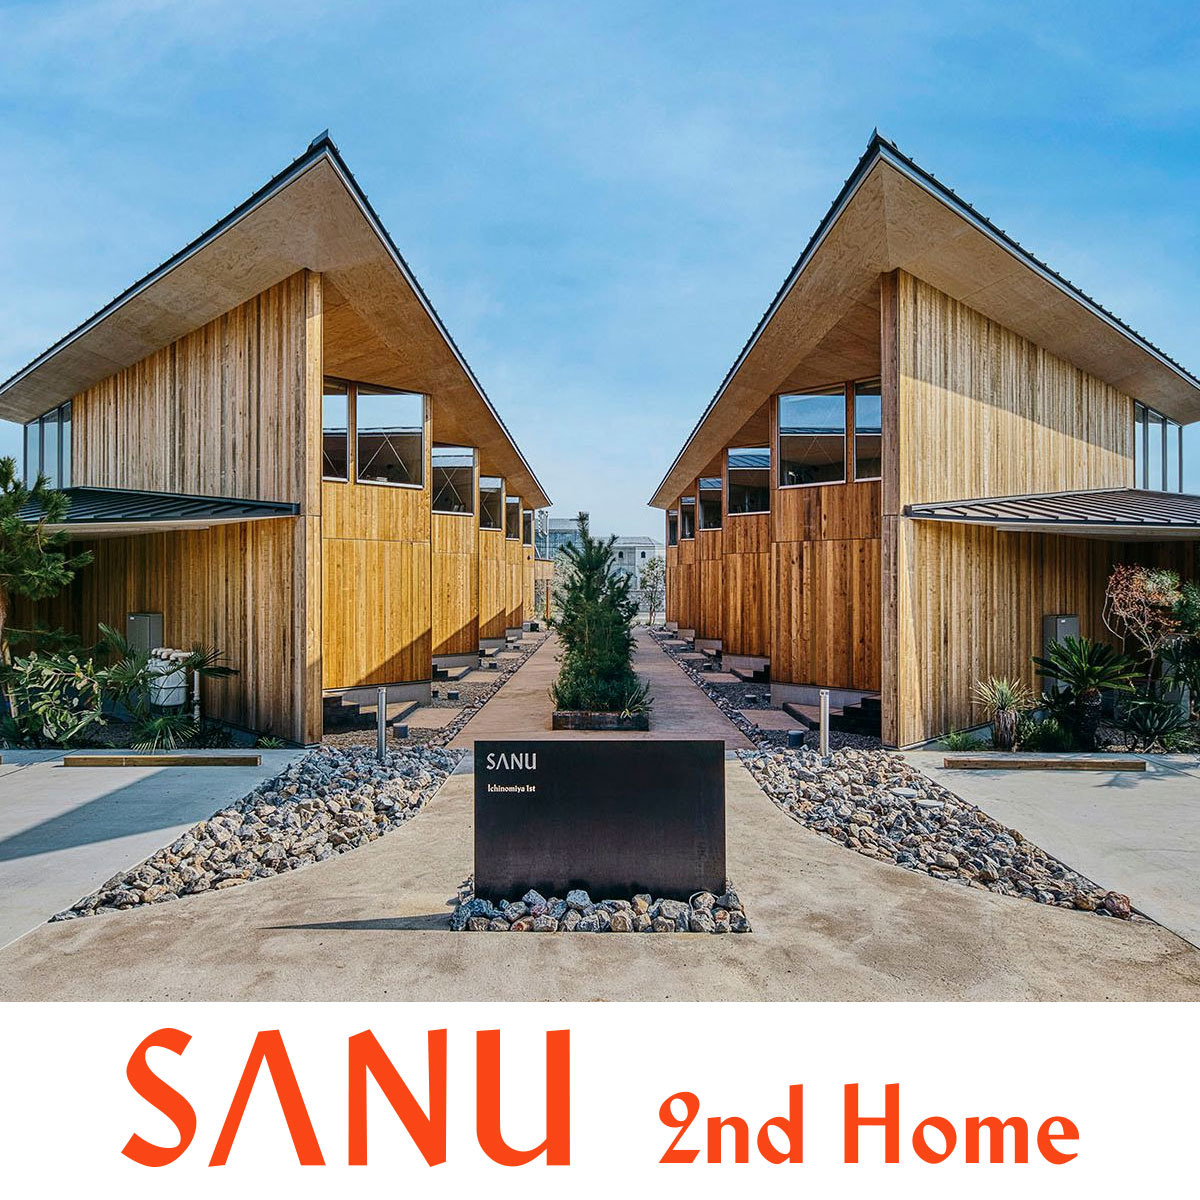 SANU 2nd Home体験宿泊の詳細